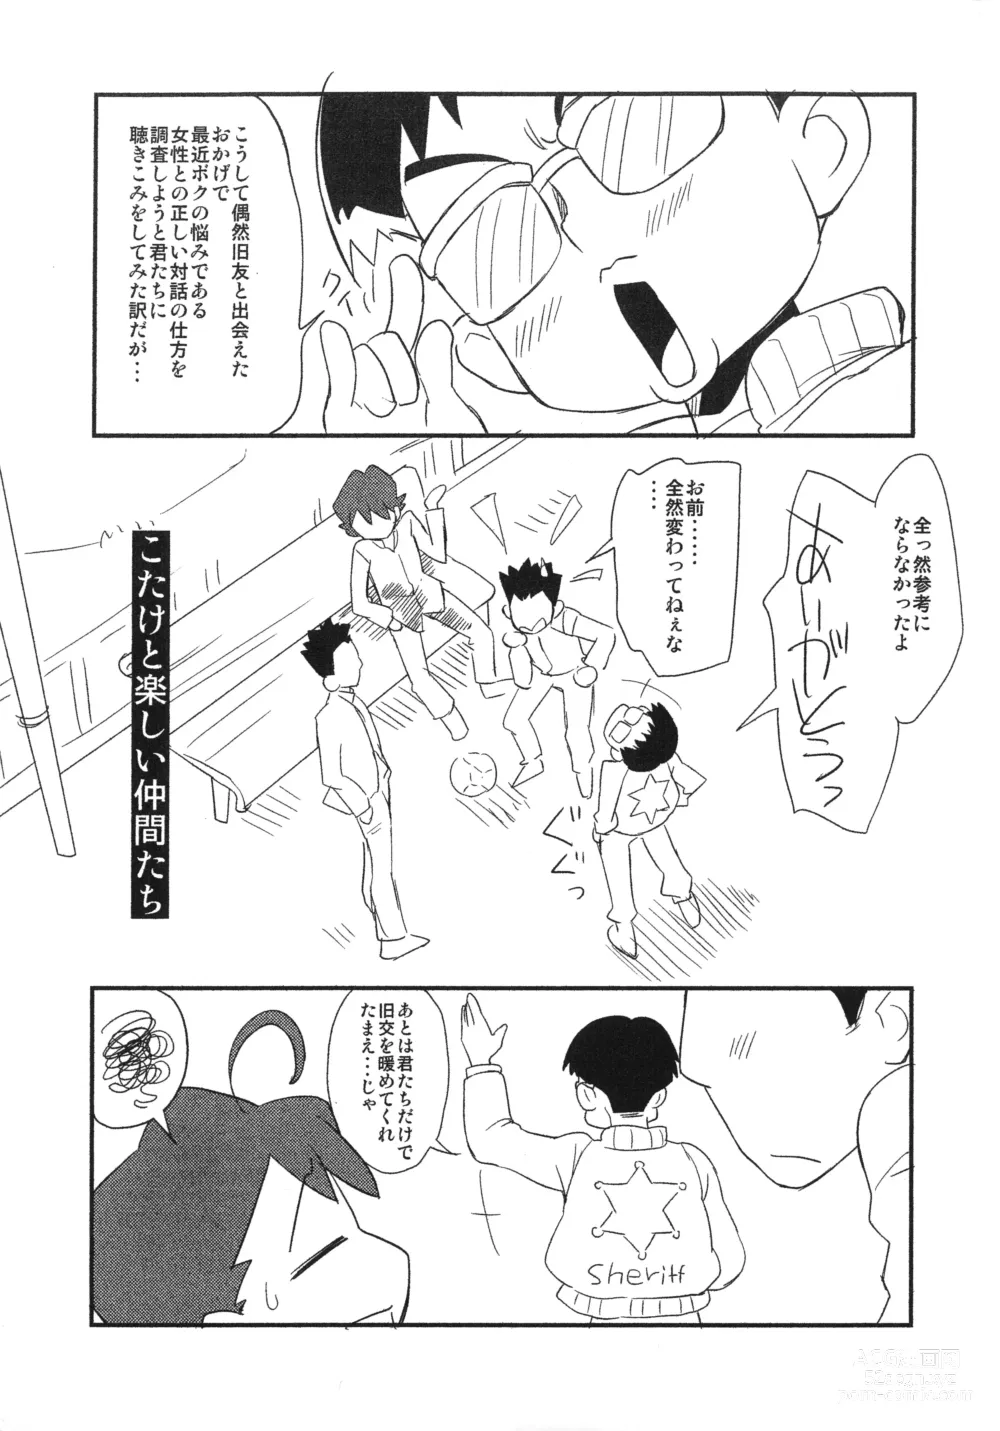 Page 2 of doujinshi Kotake 16